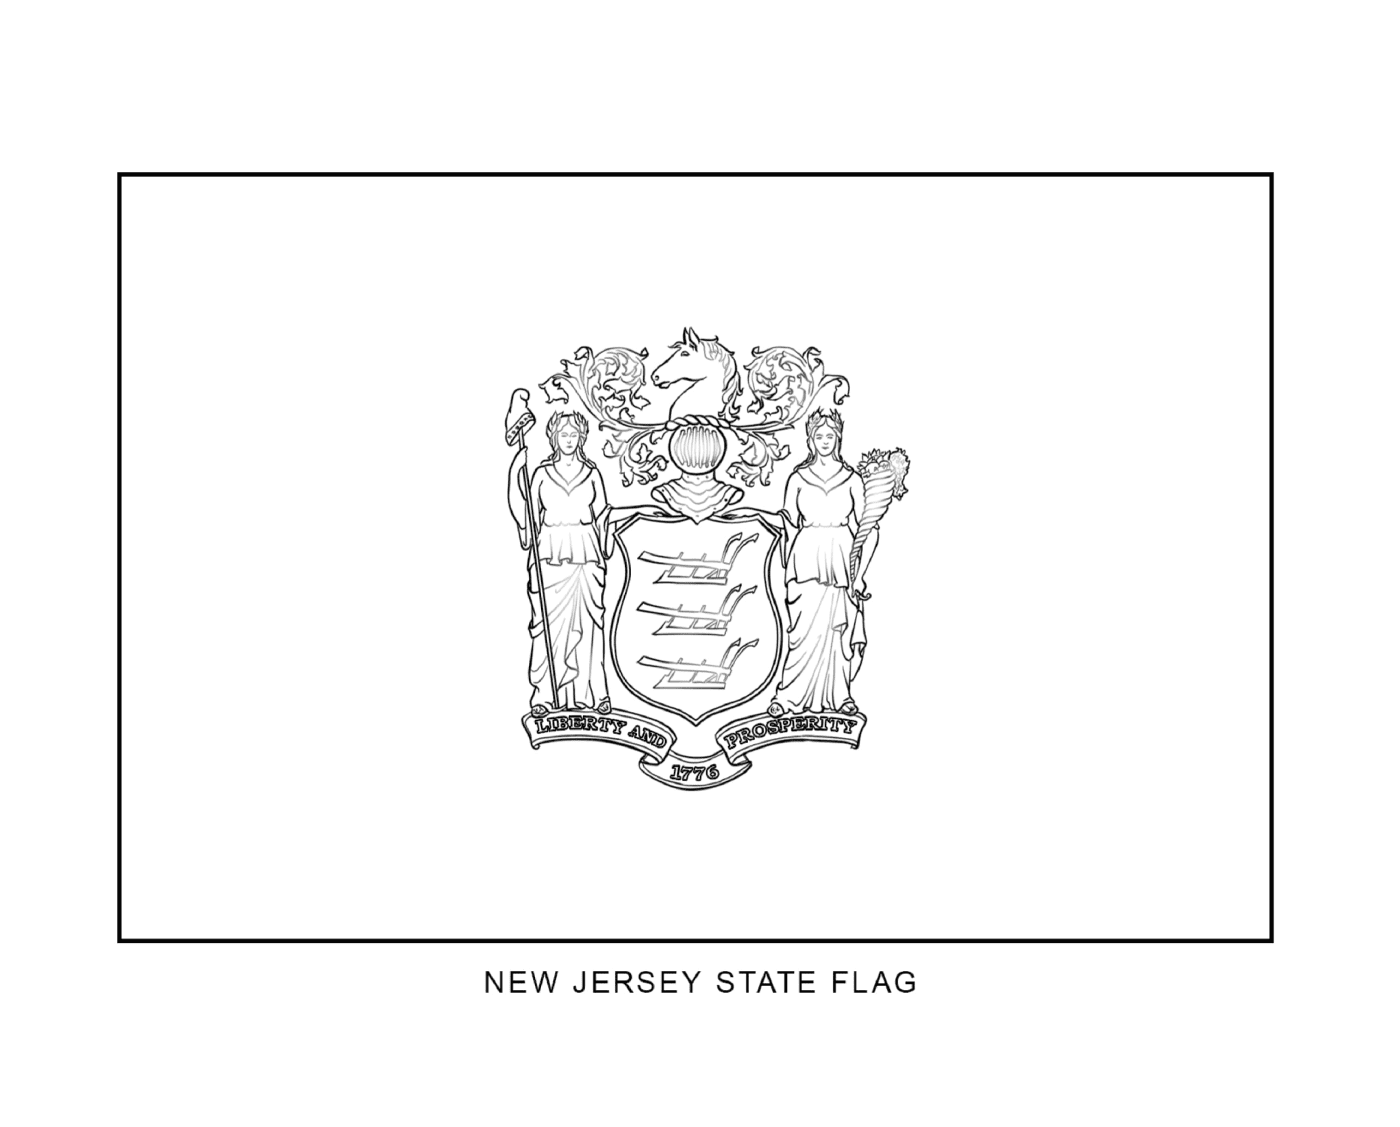  Bandera del estado de Nueva Jersey en blanco y negro 